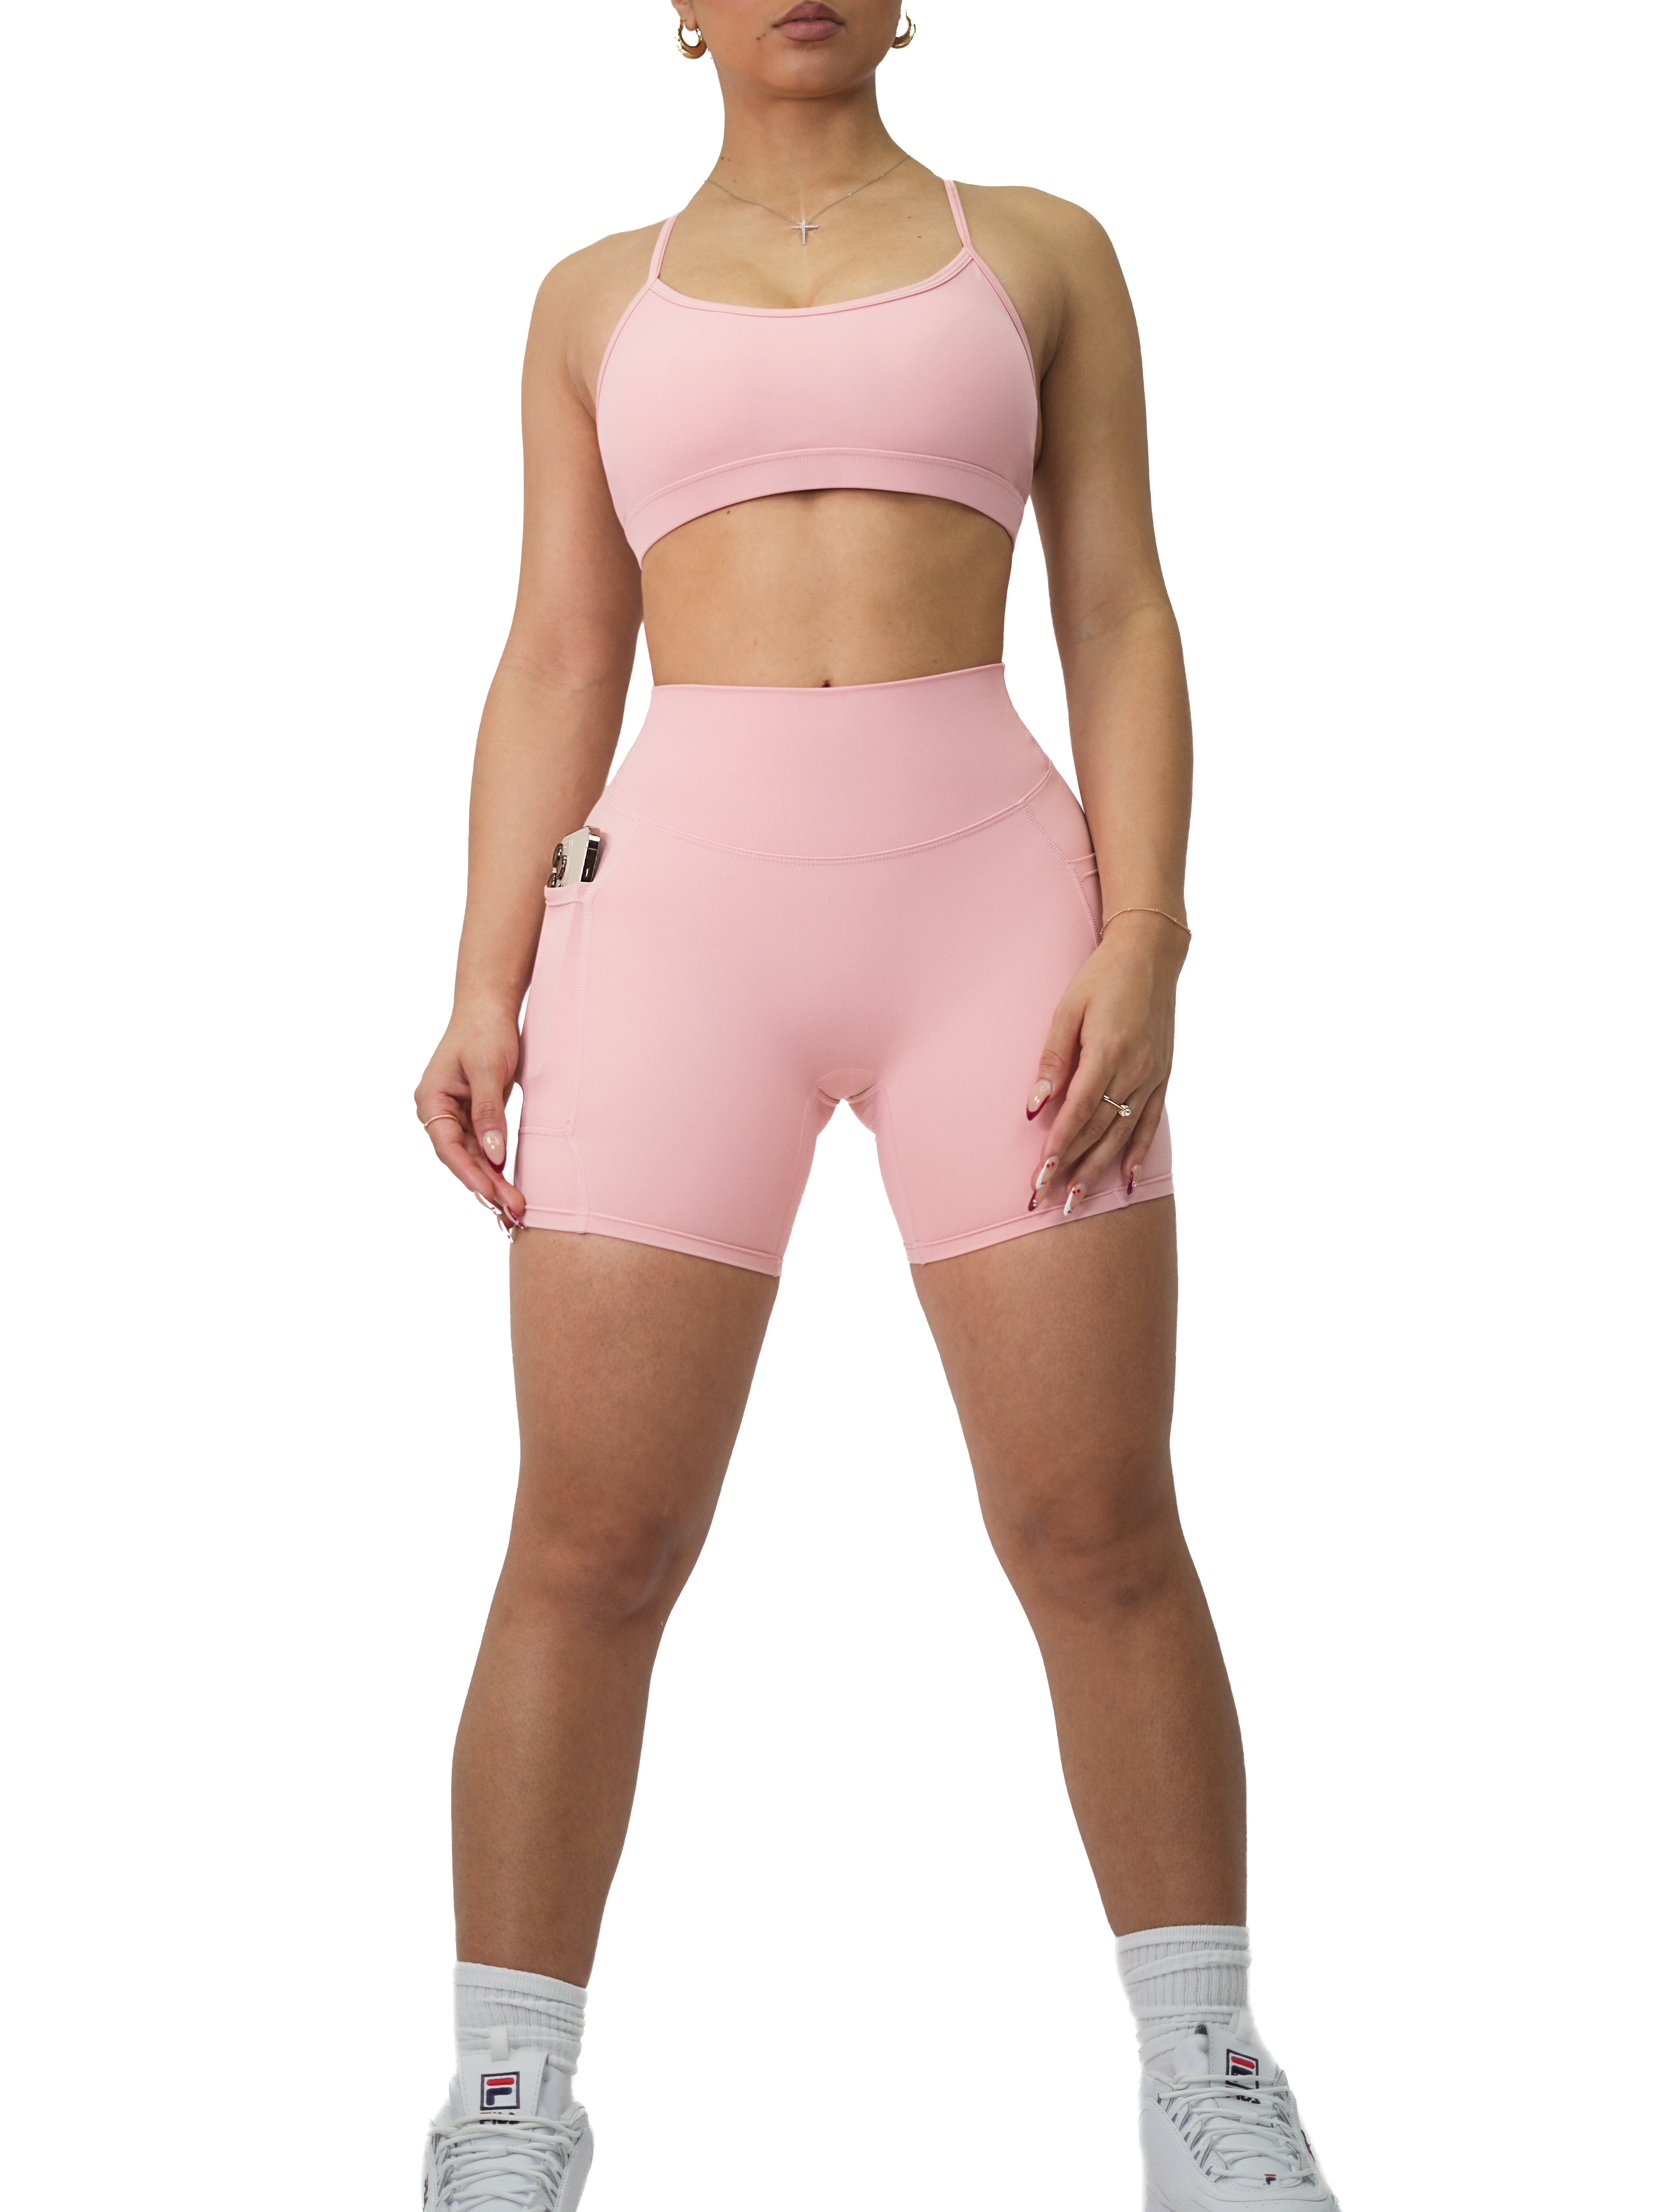 Premier Buttersoft Pocket Shorts (Blush Pink)